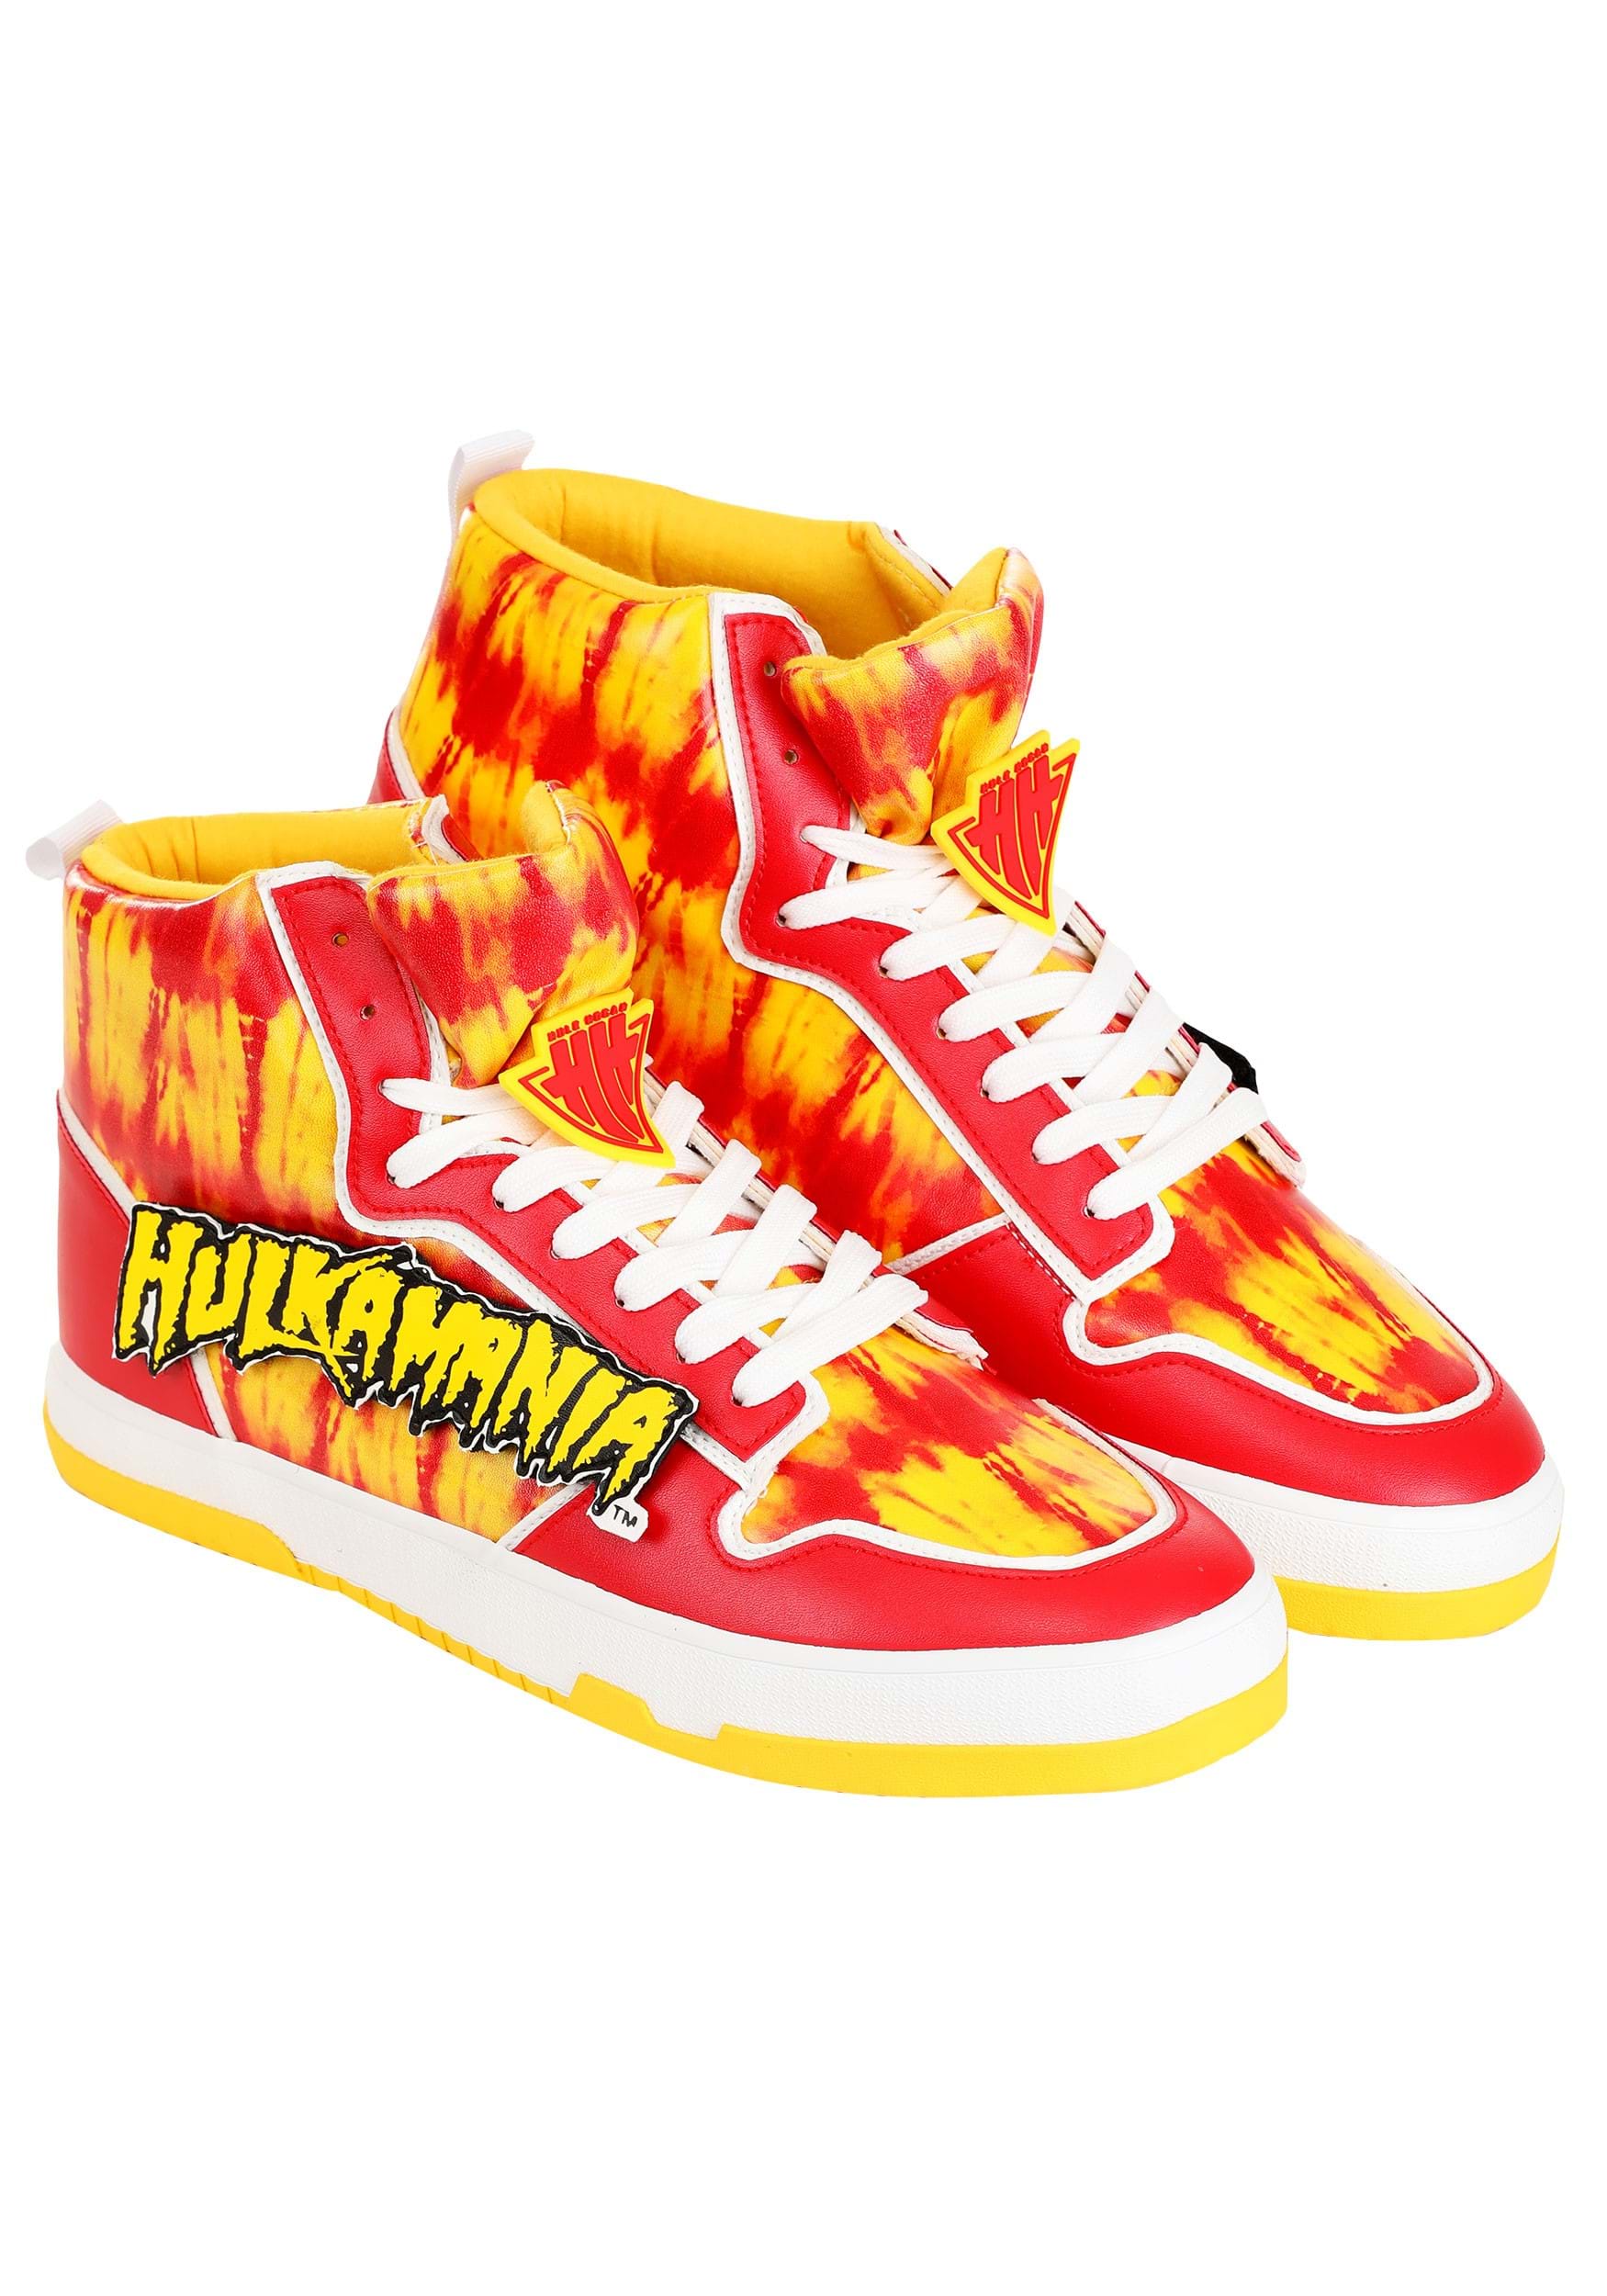 Hulk Hogan Hulkamania Mens Shoes